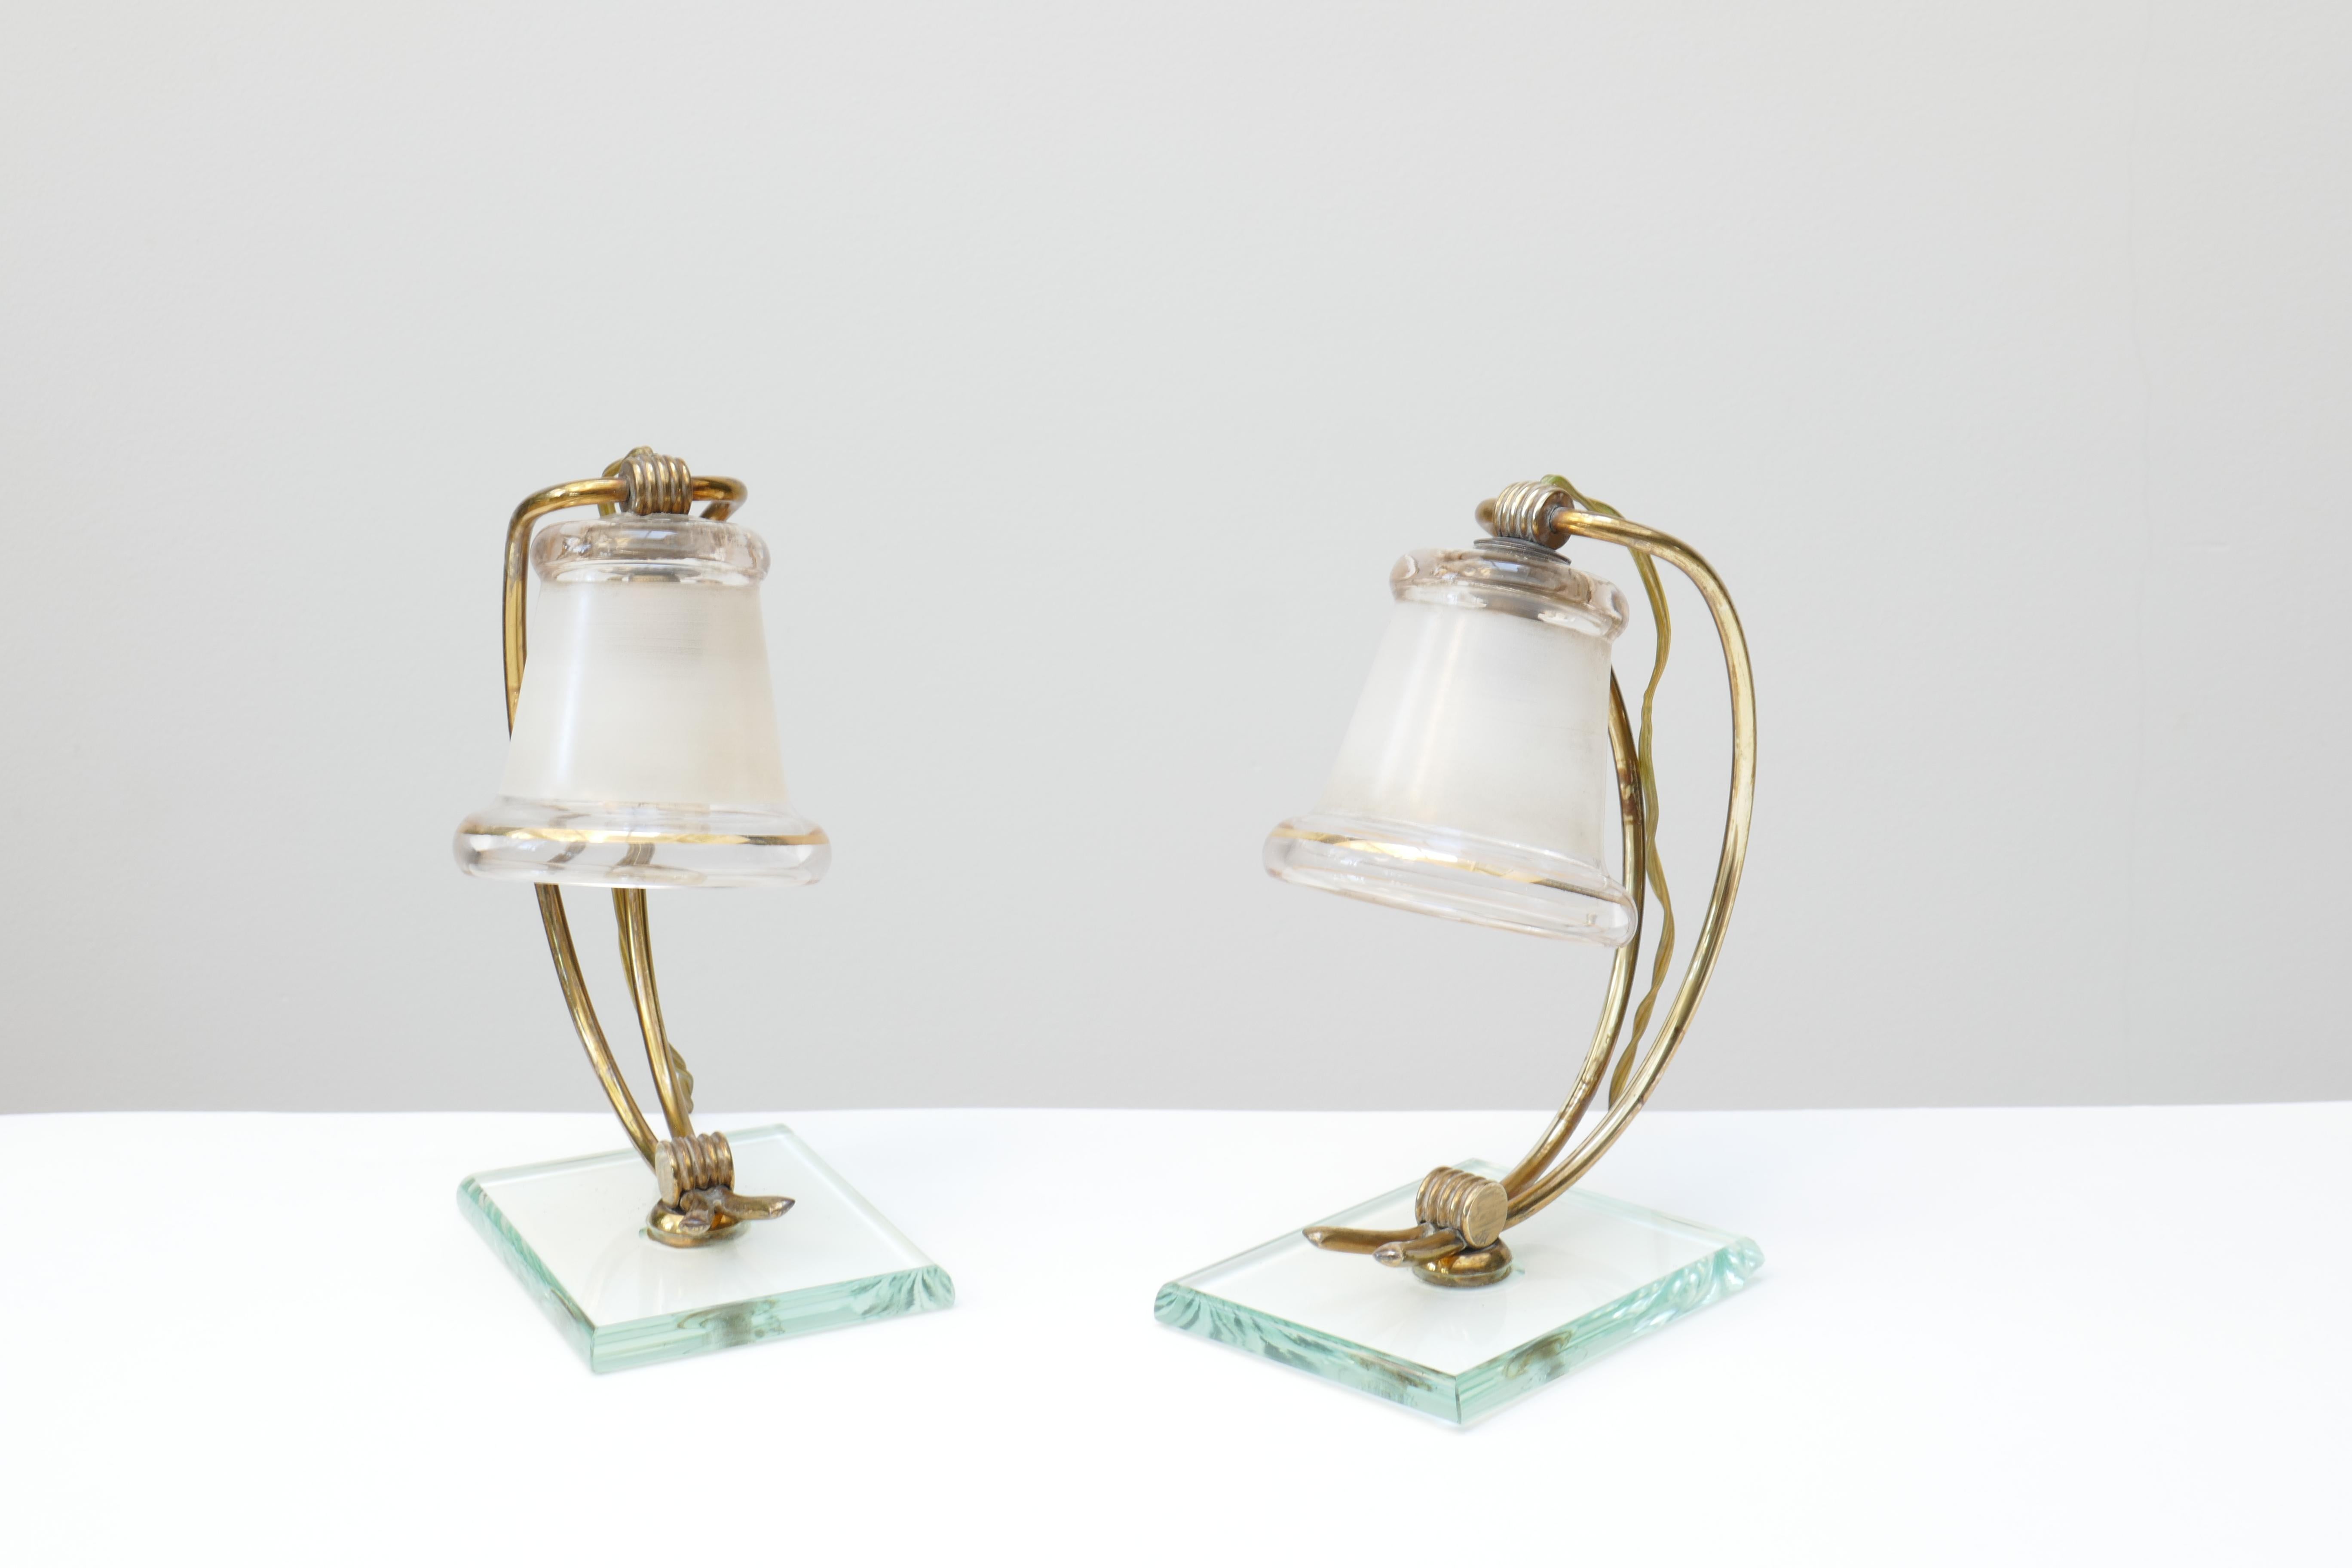 Une paire unique de petites lampes de table vintage italien dans le style de Fontana Arte . Une tige en laiton à double courbure tient un verre en forme de cloche avec des bords dorés. L'abat-jour en verre a des bords transparents tandis que la